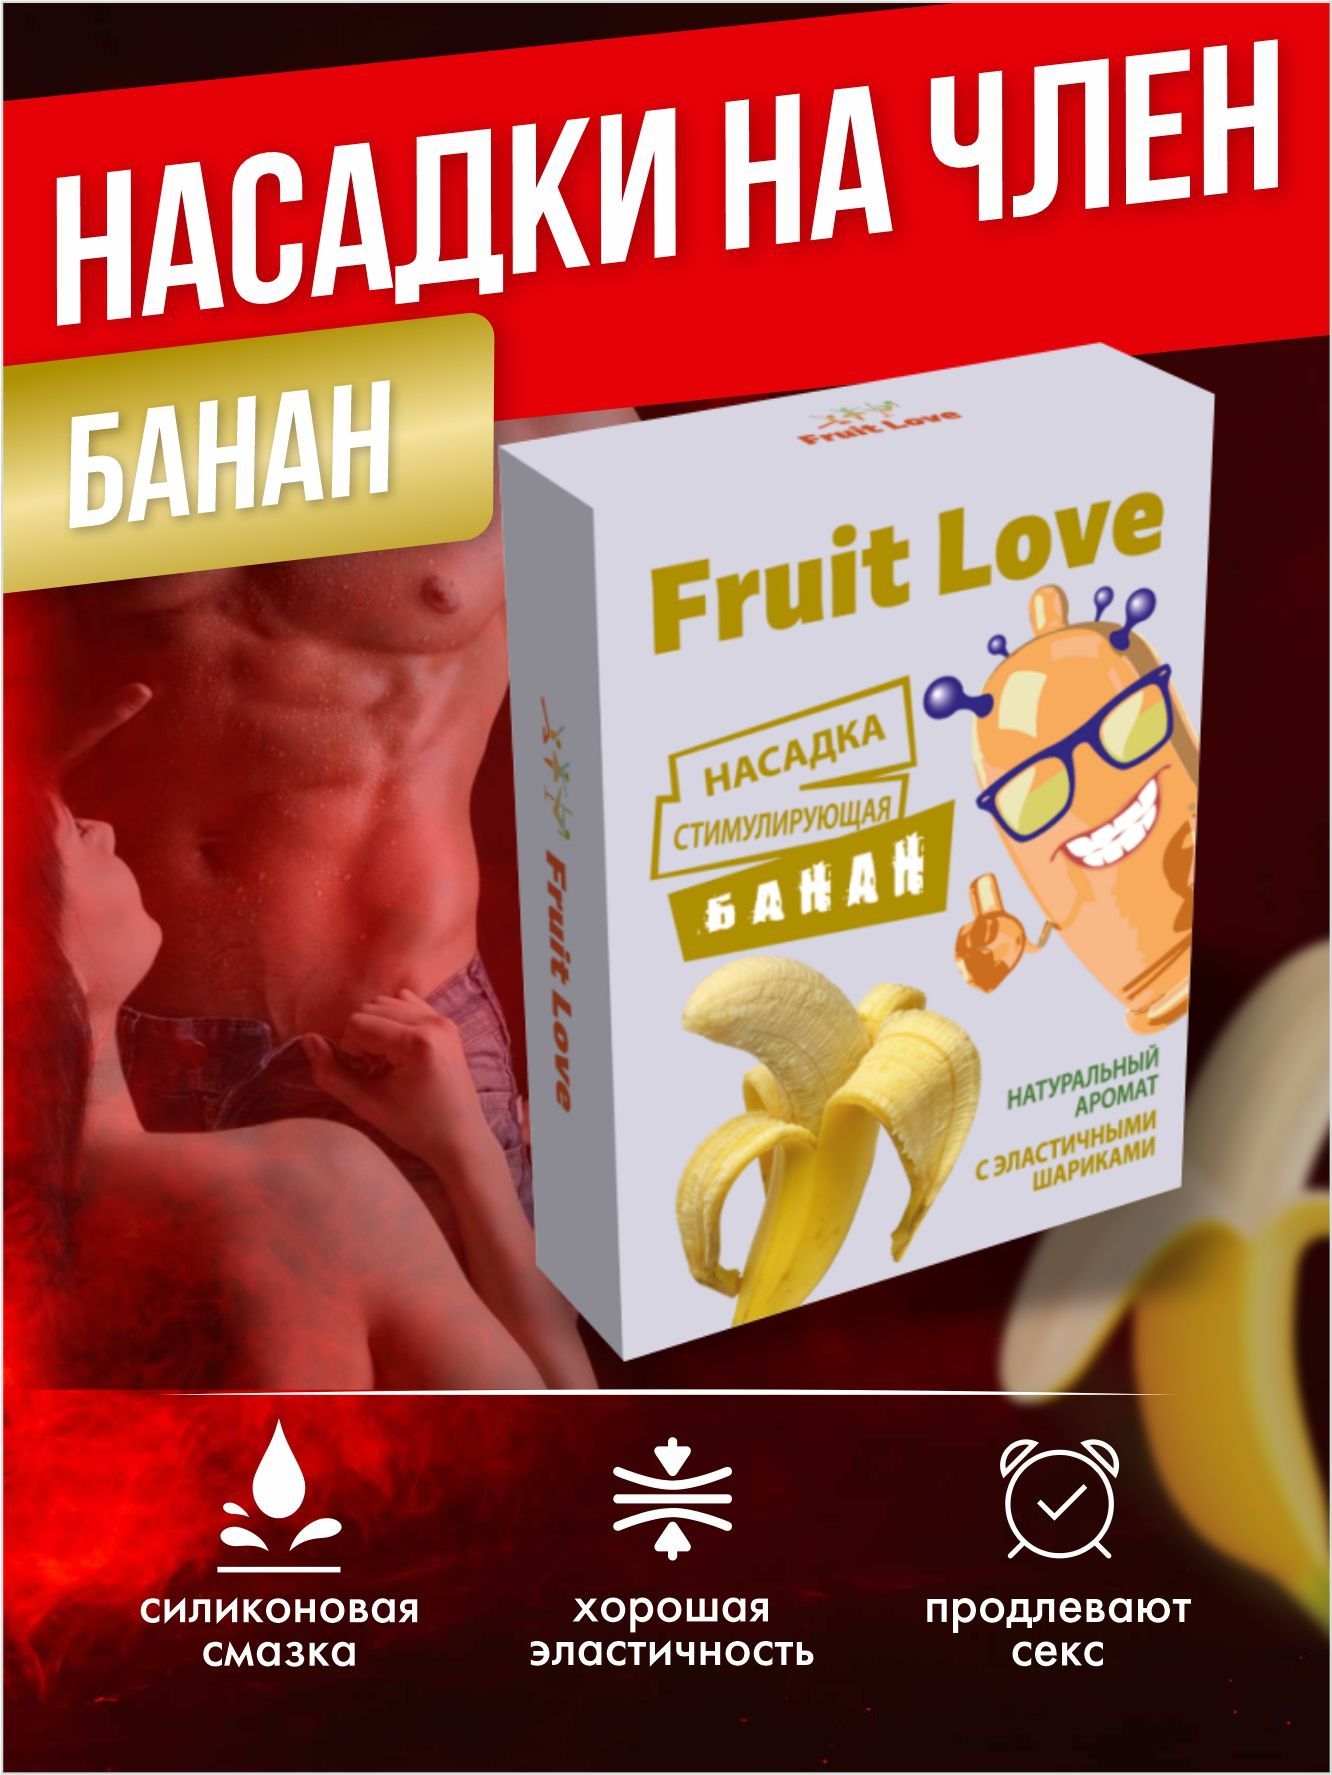 Секс банан. Смотреть русское порно видео бесплатно